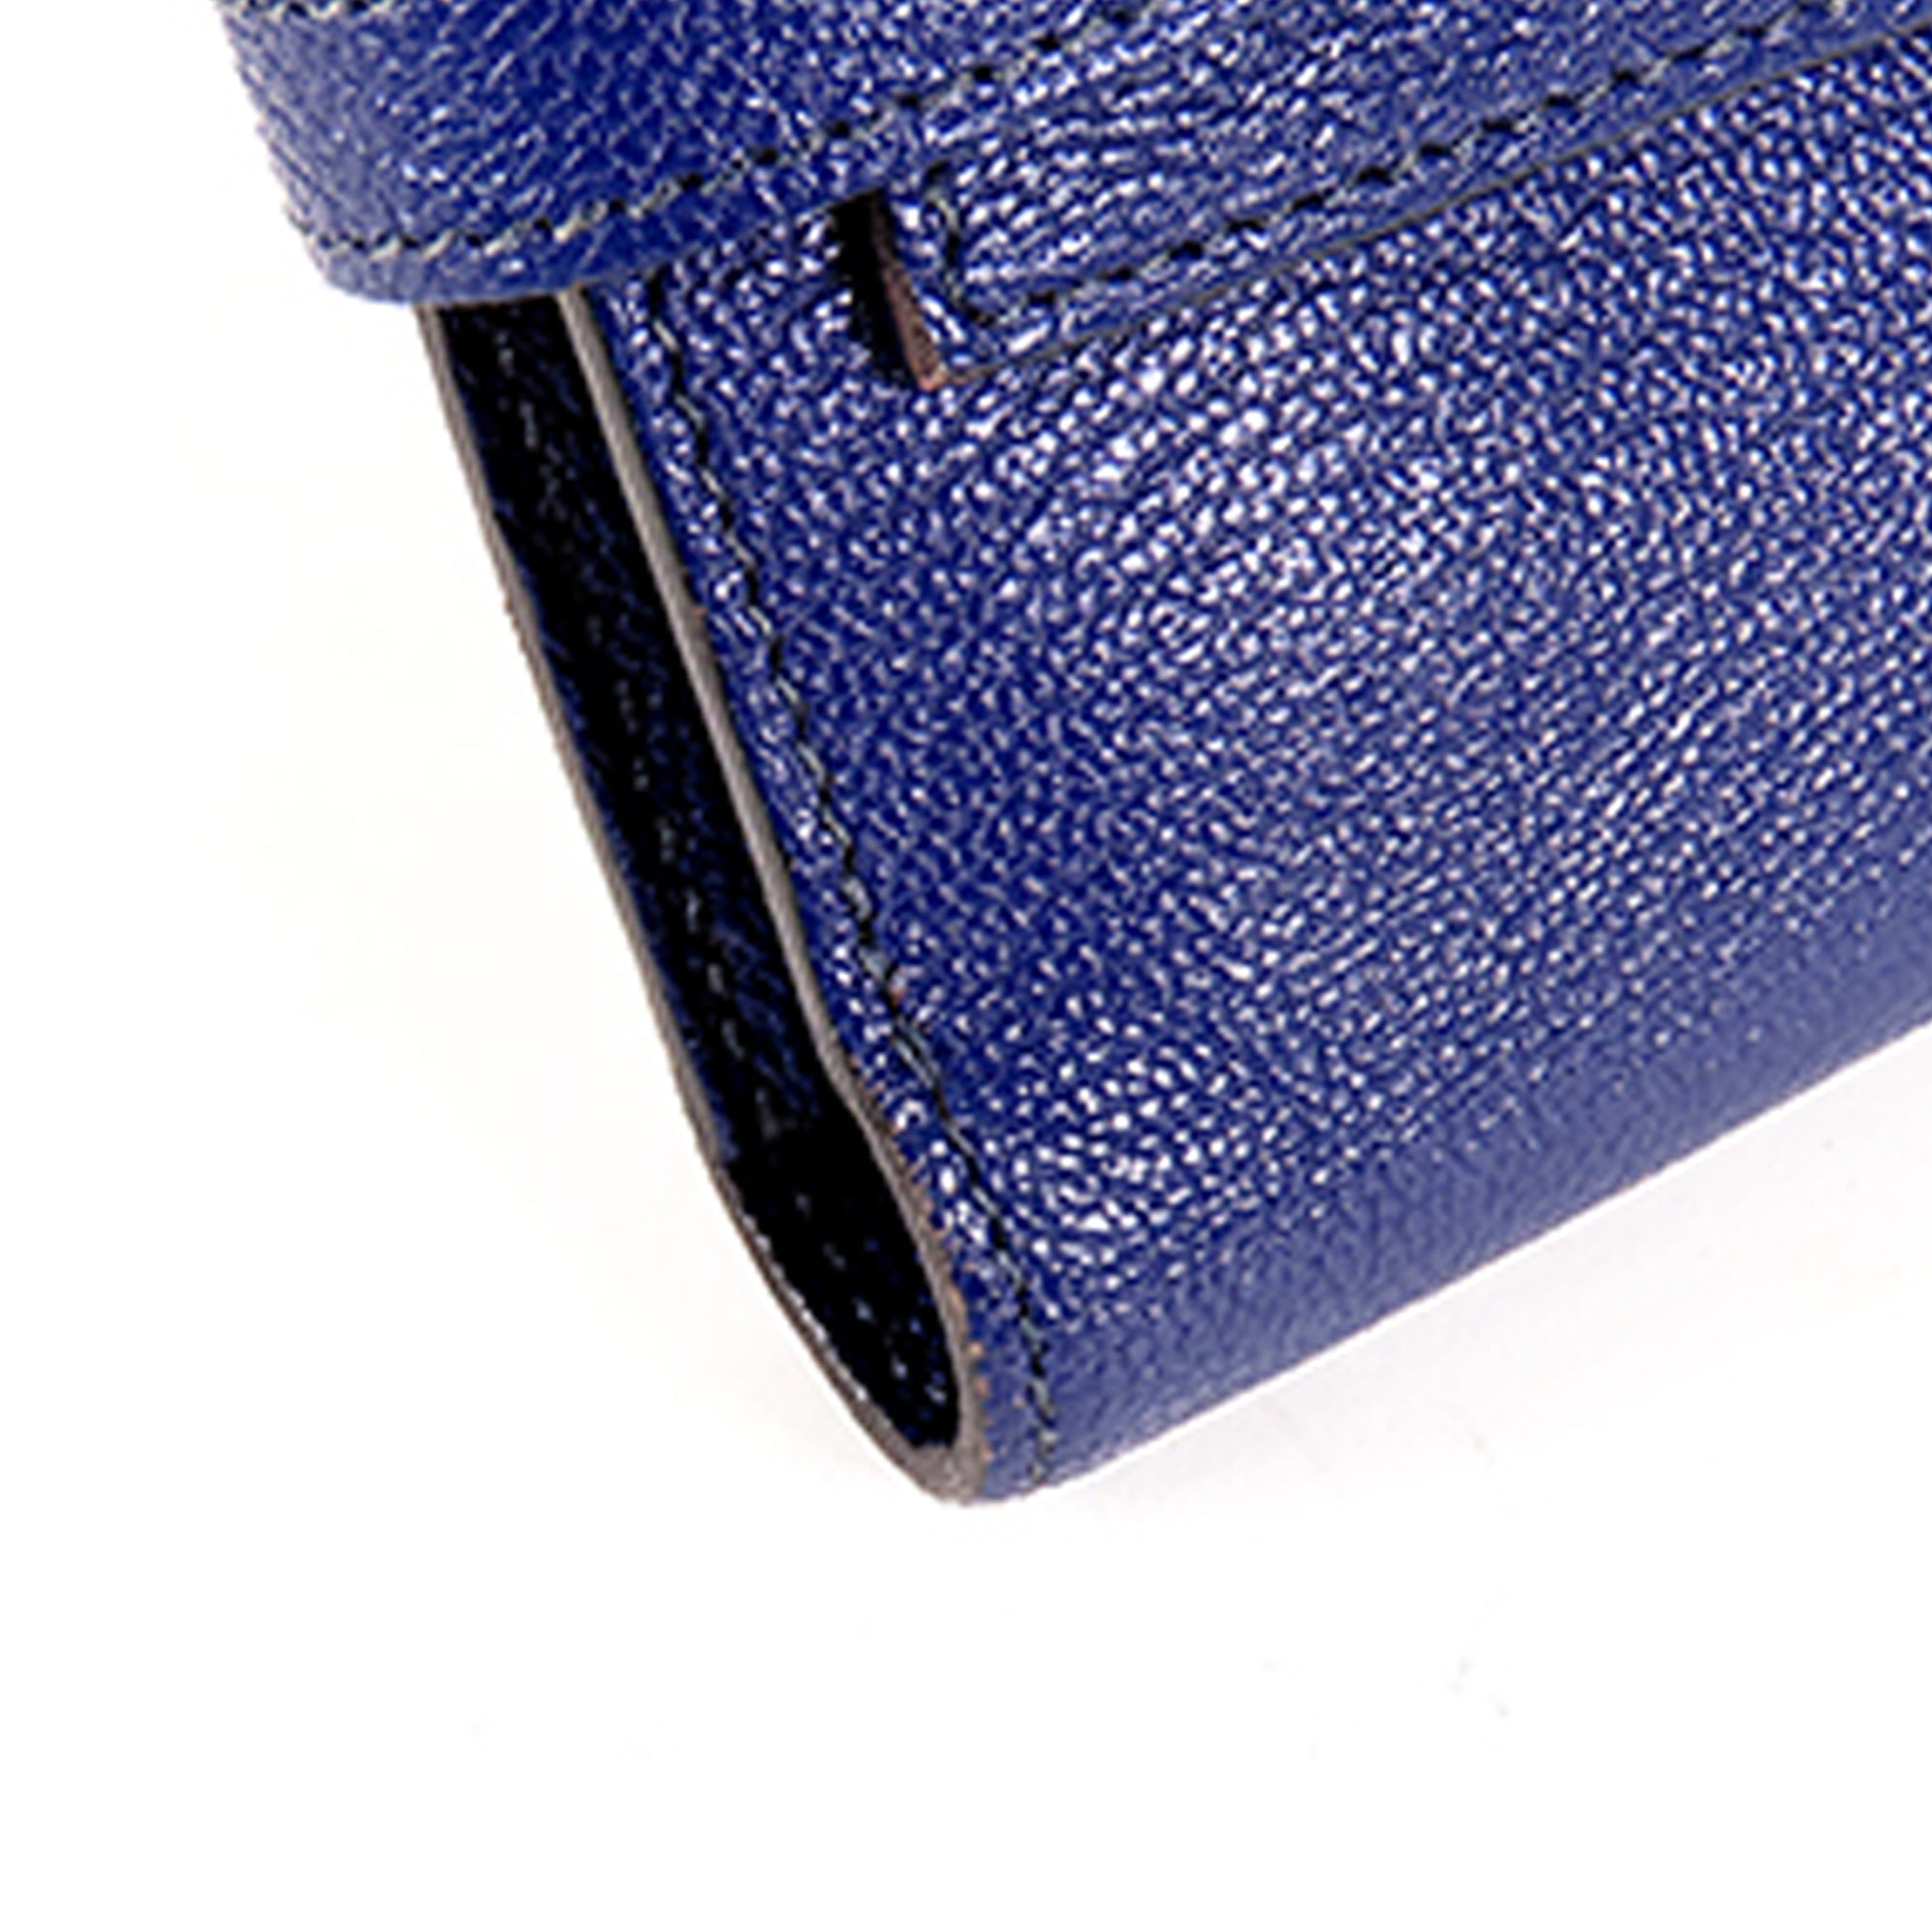 Blue Hermes Kelly Chevre Long Wallet - Designer Revival